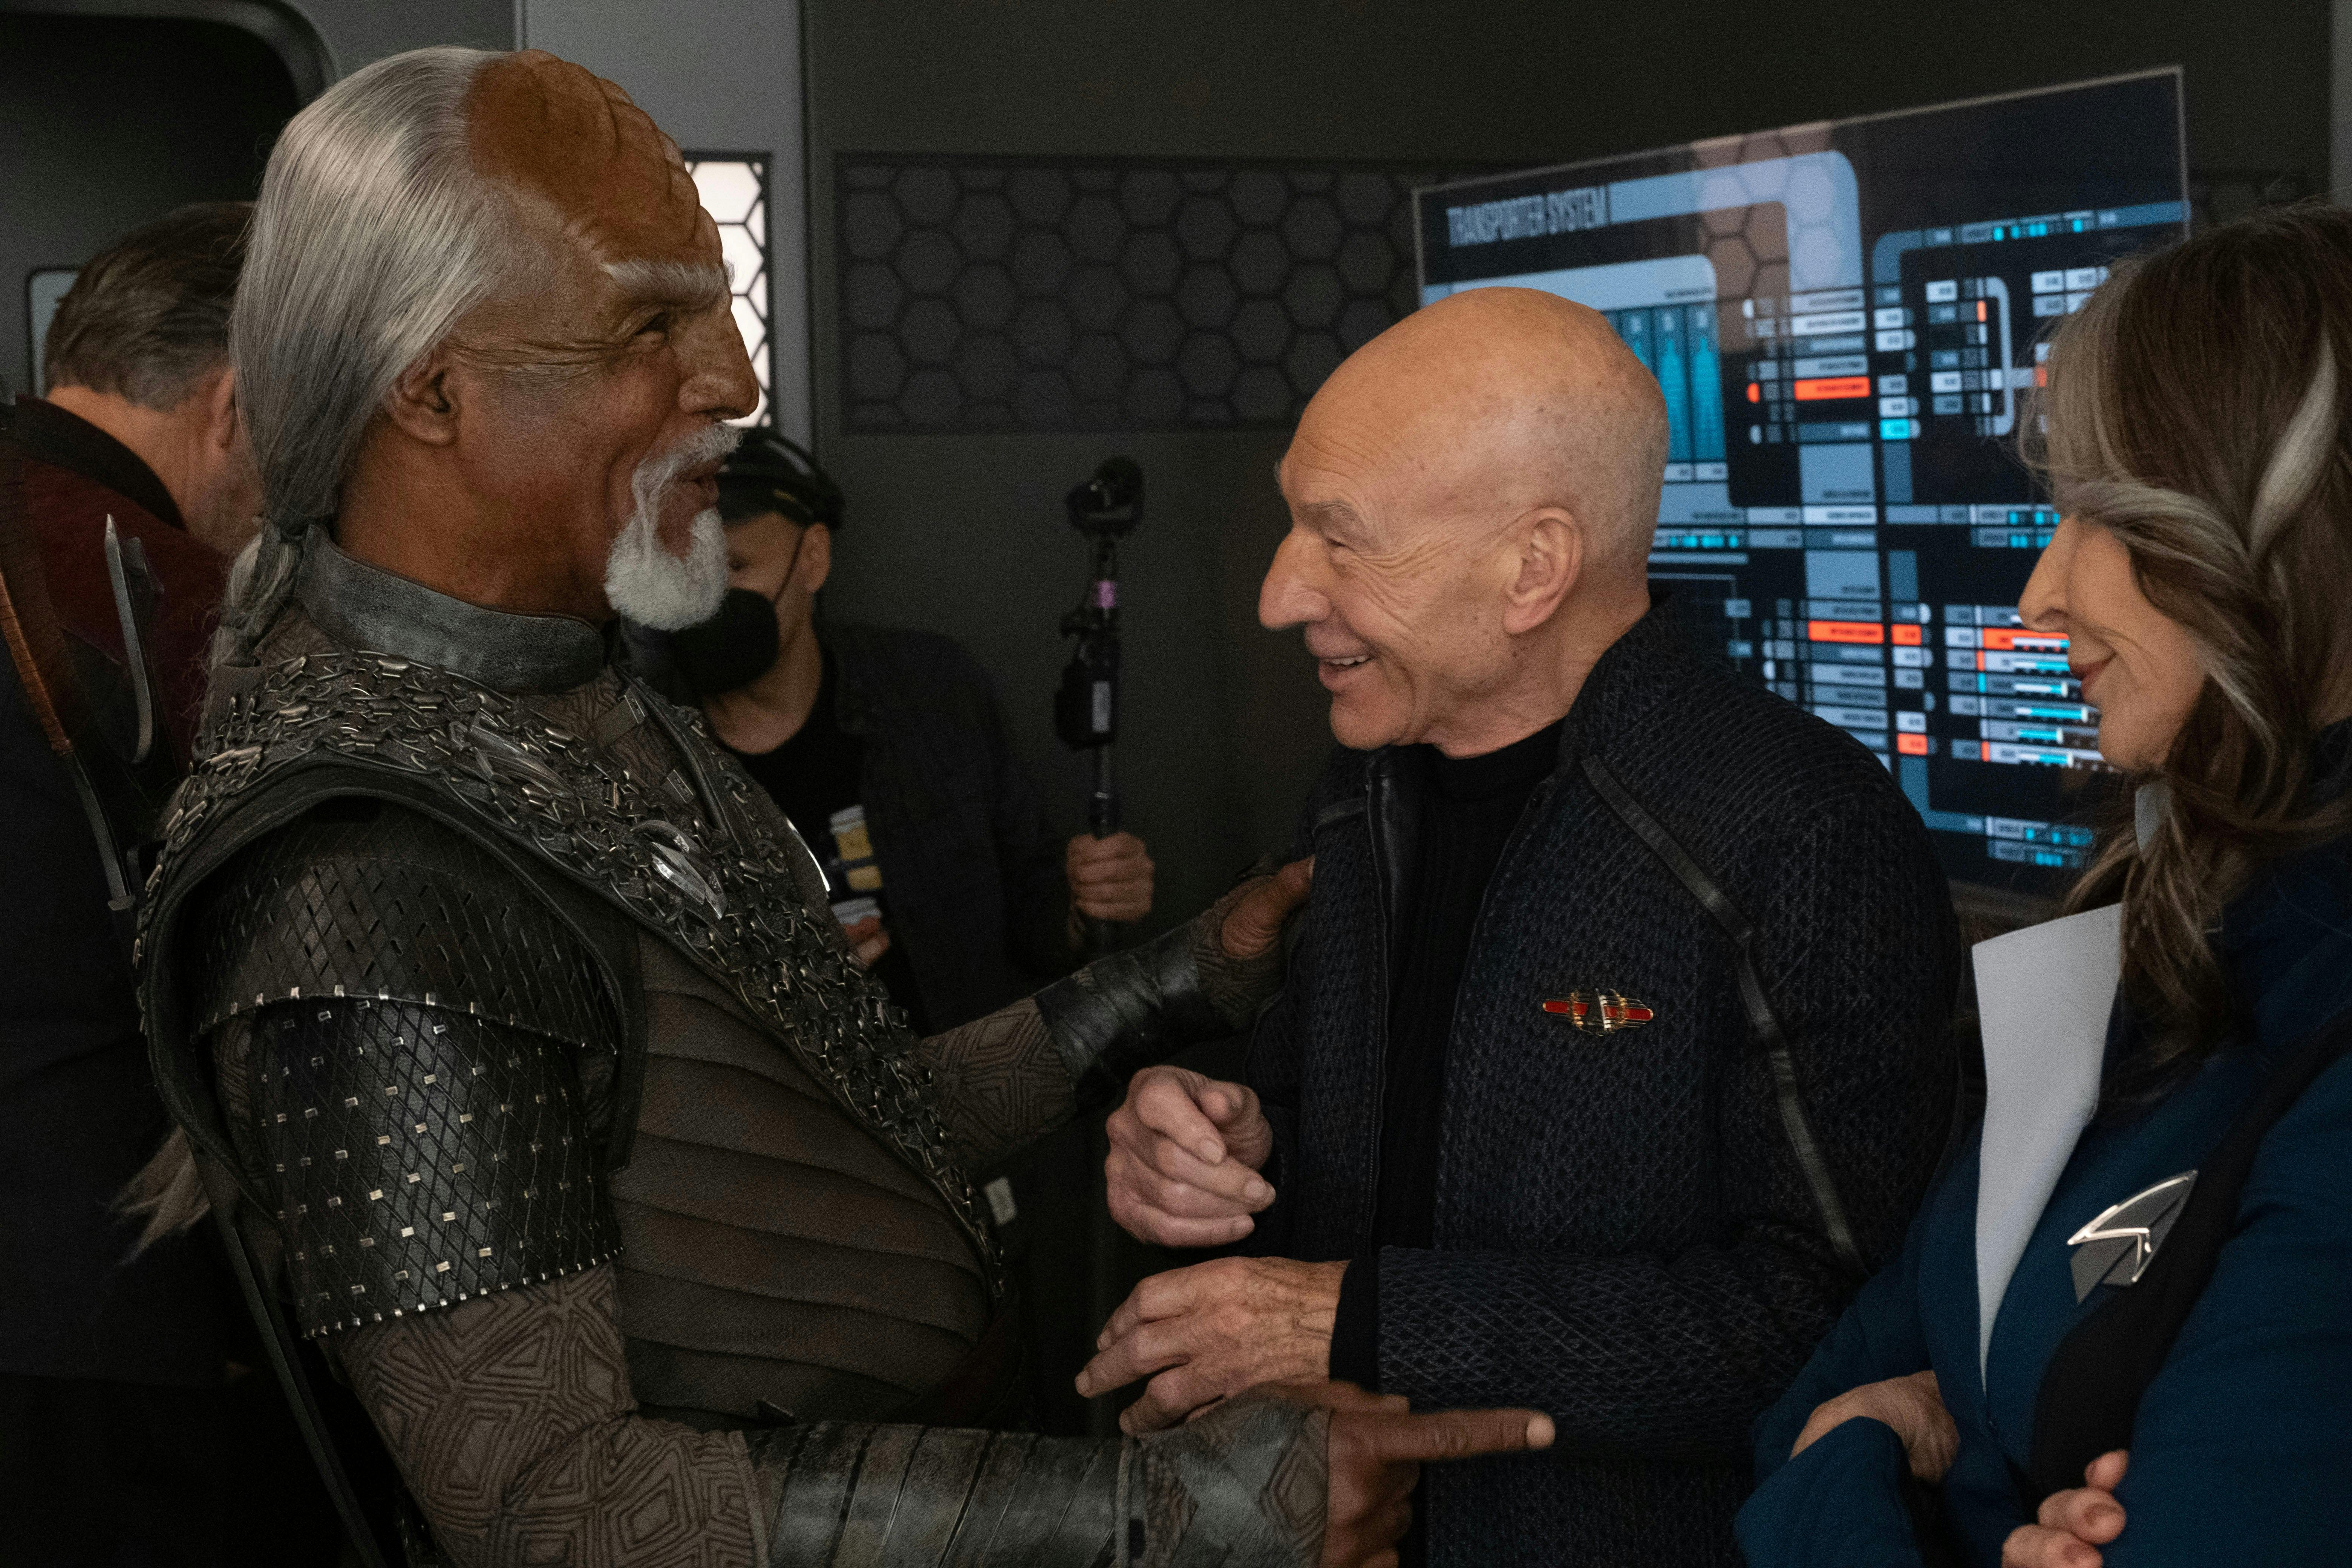 Star Trek: Picard BTS still - a candid moment between Michael Dorn, Patrick Stewart, and Gates McFadden